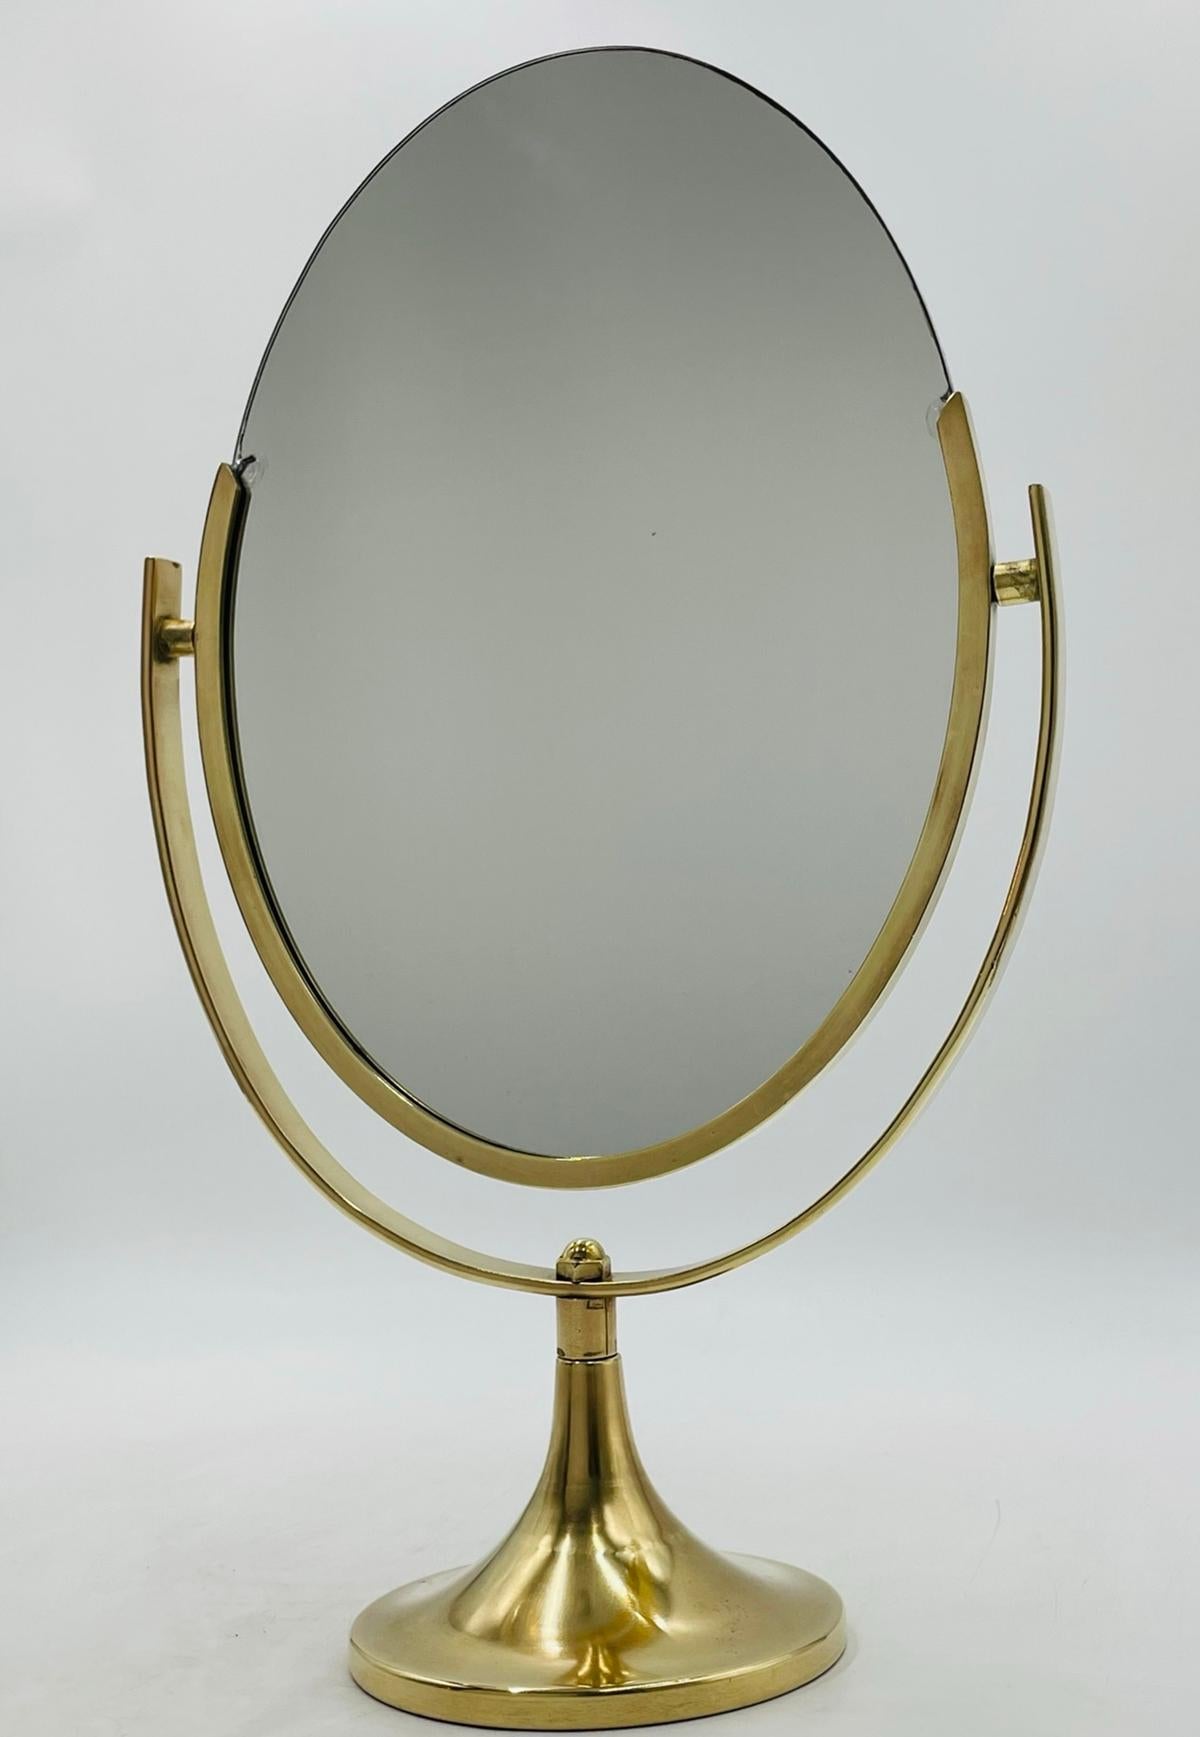 Der beidseitige Waschtischspiegel aus Messing von Charles Hollis Jones ist ein beeindruckendes und funktionelles Möbelstück, das jeden Raum aufwertet. Dieser ursprünglich in den 1970er Jahren in den USA gefertigte Spiegel ist ein echtes